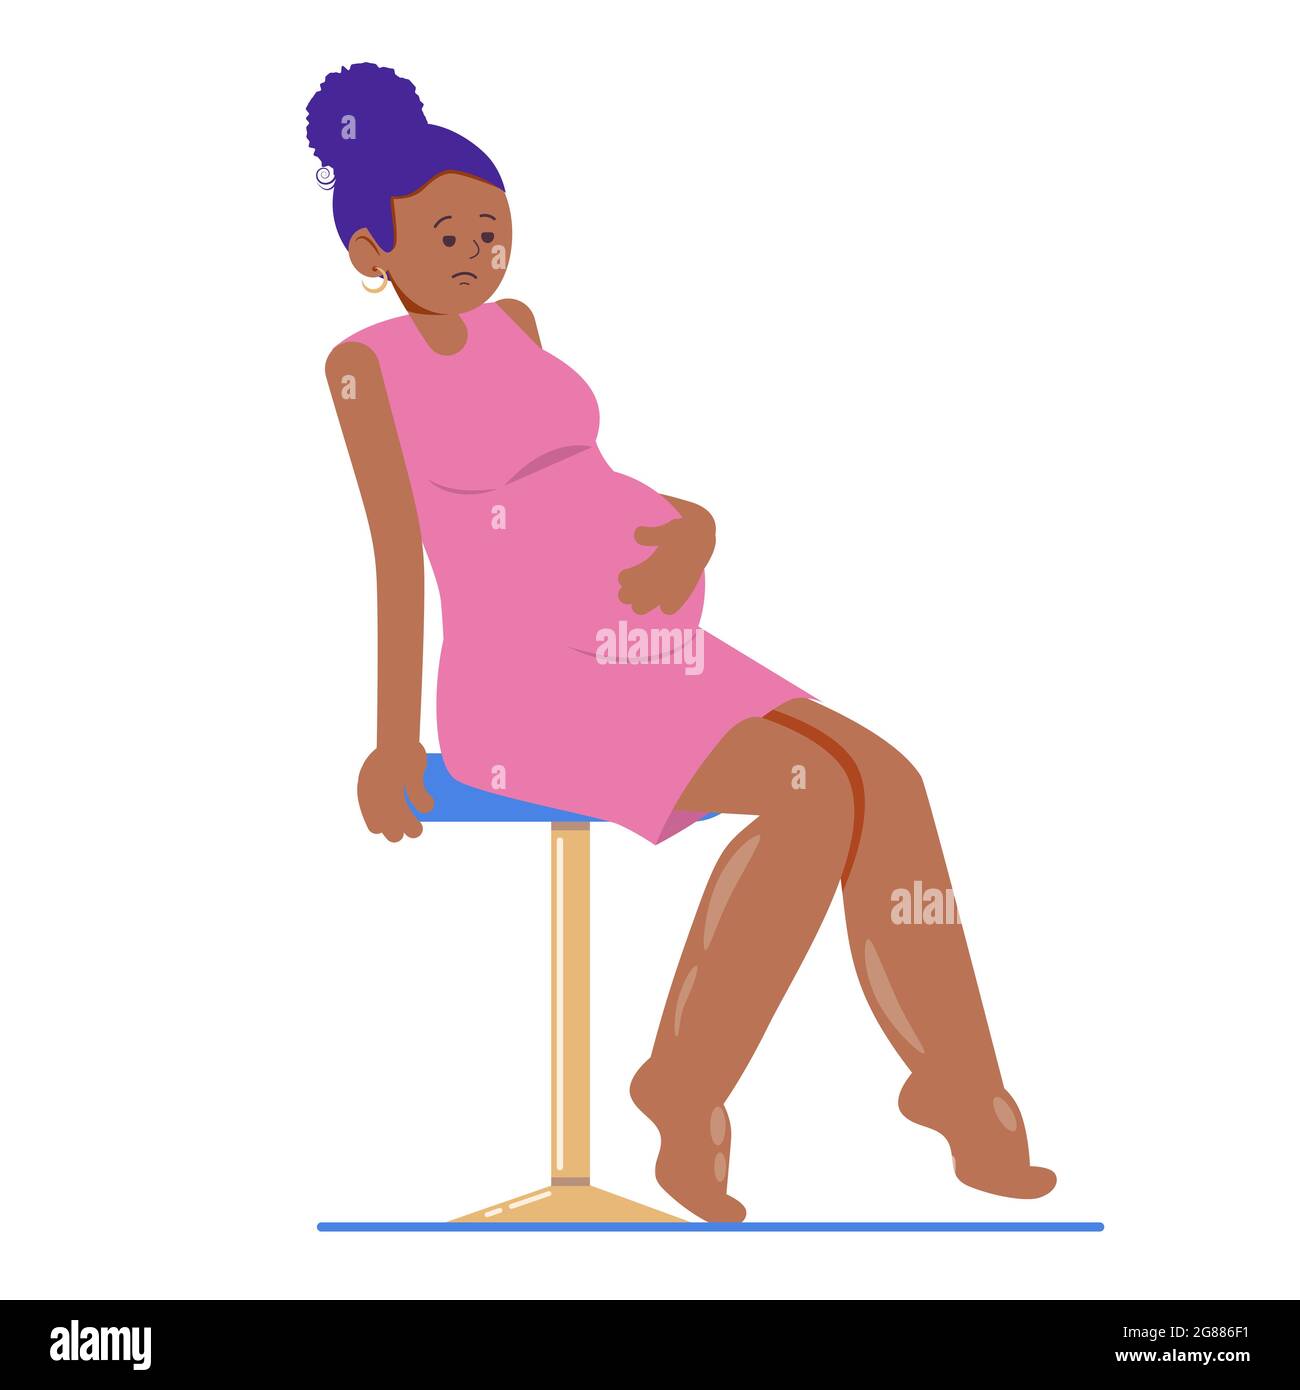 Donna incinta dalla pelle scura con gambe gonfie. Caviglie e piedi gonfi. Illustrazione vettoriale dei problemi di gravidanza Illustrazione Vettoriale